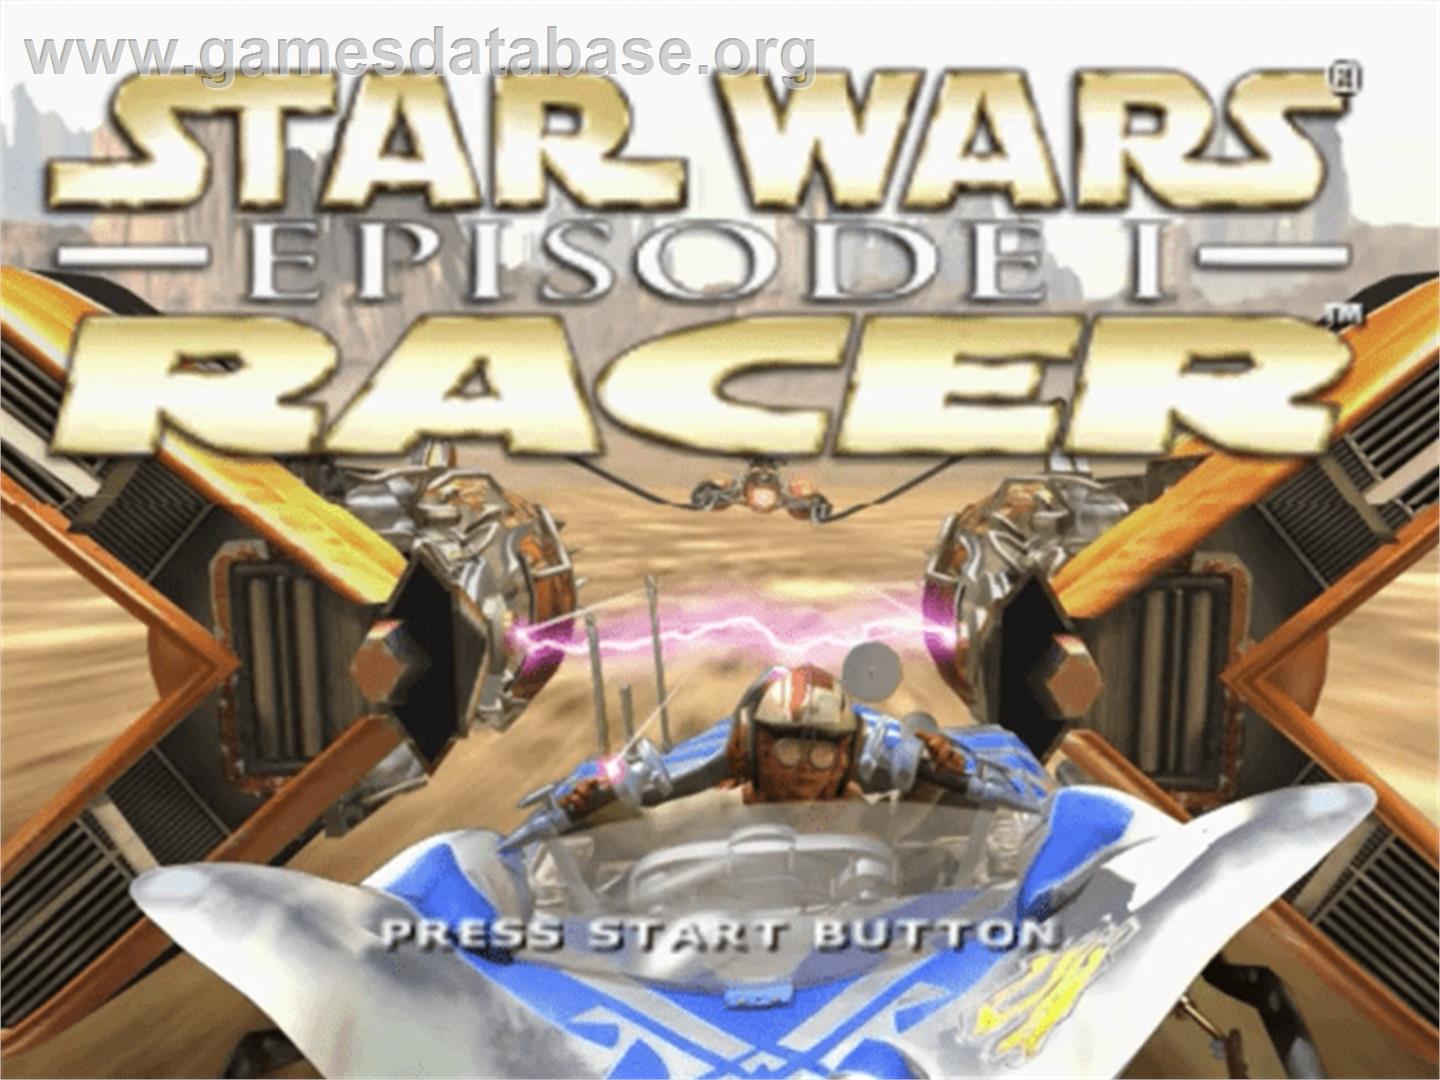 Star Wars: Episode I - Racer - Sega Dreamcast - Artwork - Title Screen